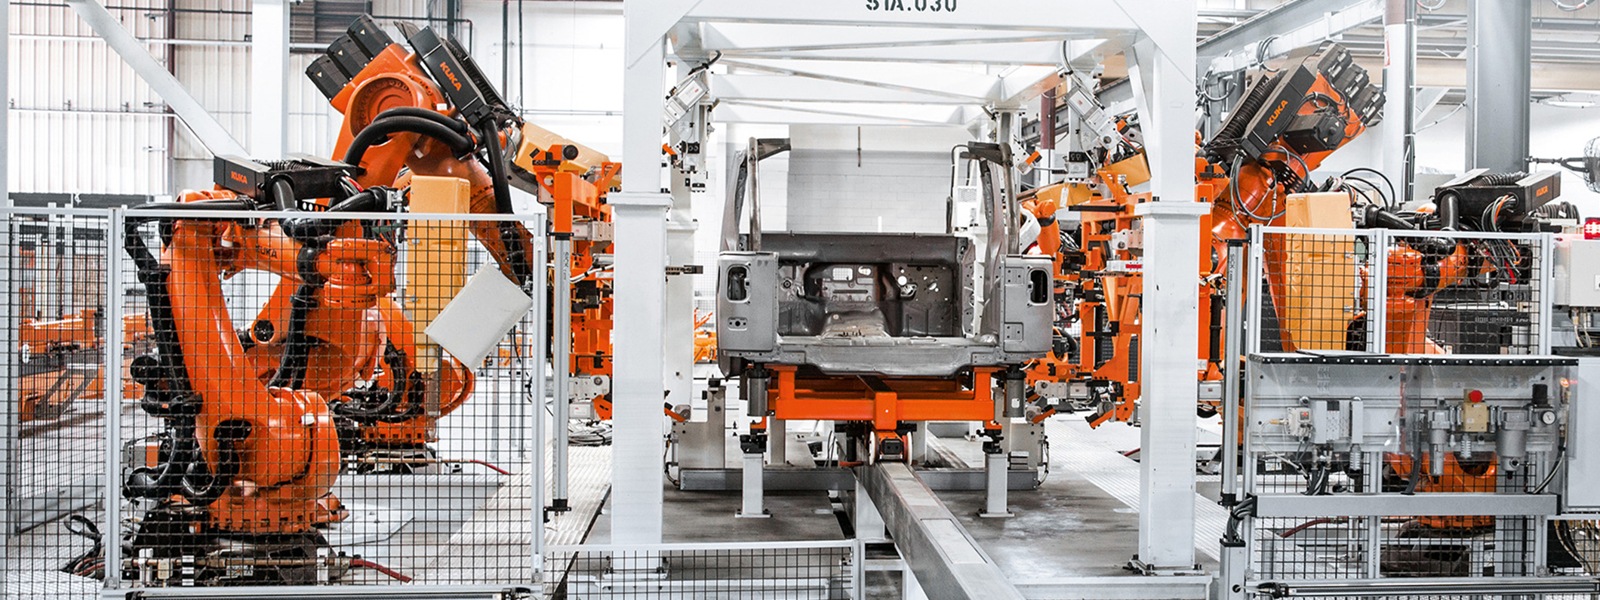 Das Bild zeigt eine Produktions-Straße, wobei auf beiden Seite orangene KUKA Roboter arbeiten.